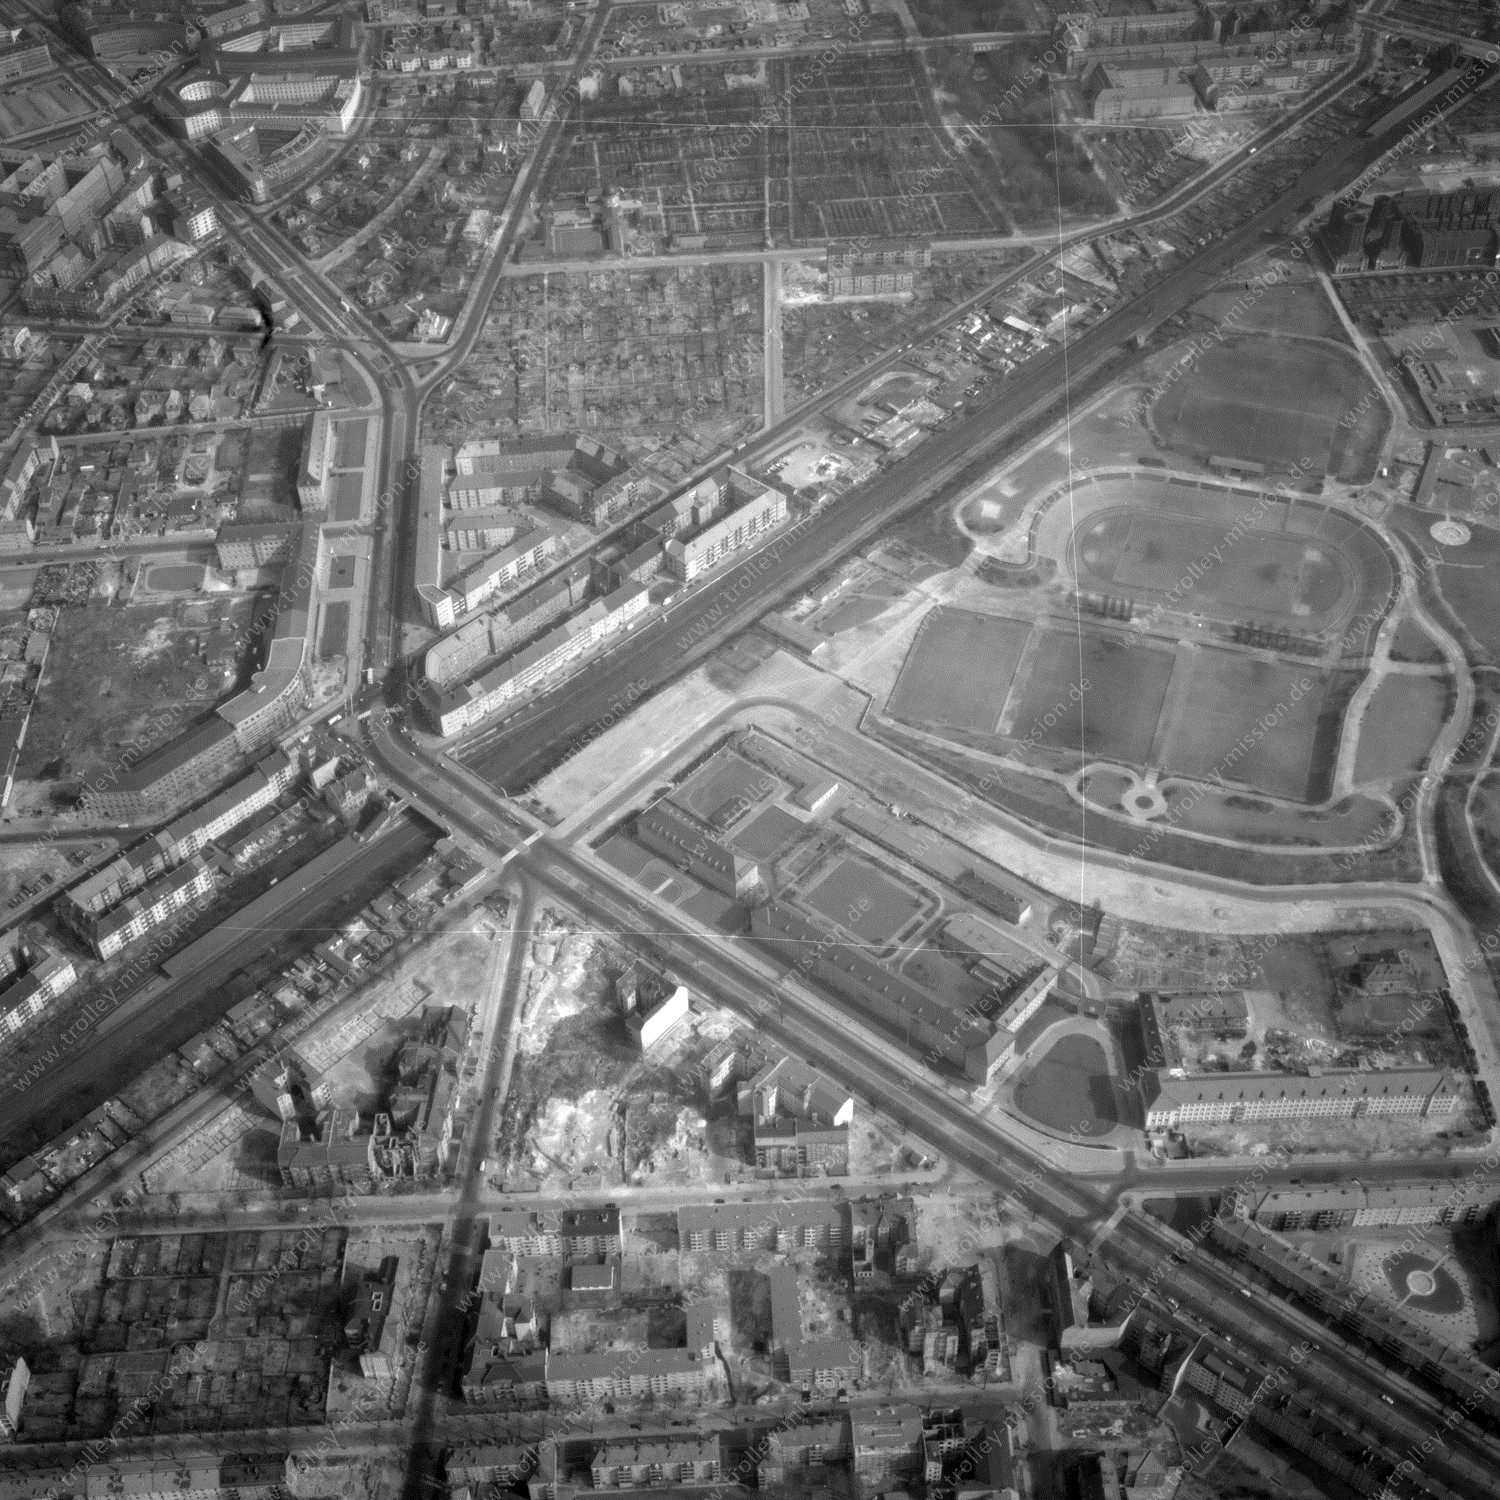 Alte Fotos und Luftbilder von Berlin - Luftbildaufnahme Nr. 04 - Historische Luftaufnahmen von West-Berlin aus dem Jahr 1954 - Flugstrecke Bravo